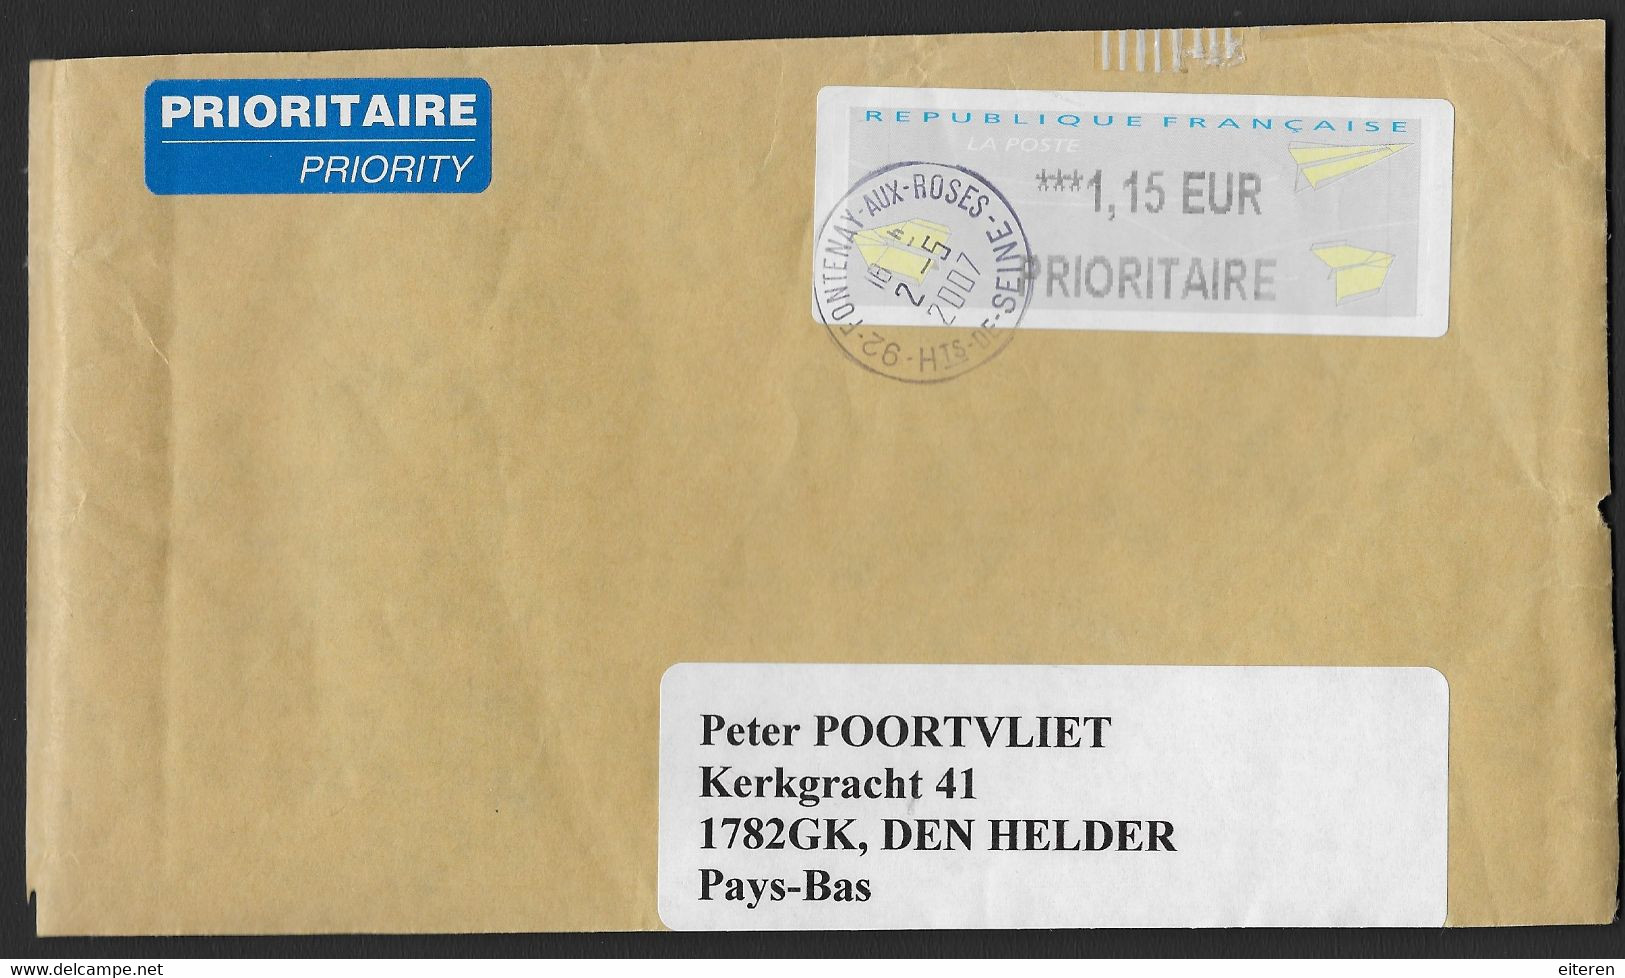 LISA - 2007 - Partie D'une Enveloppe - 2000 Type « Avions En Papier »